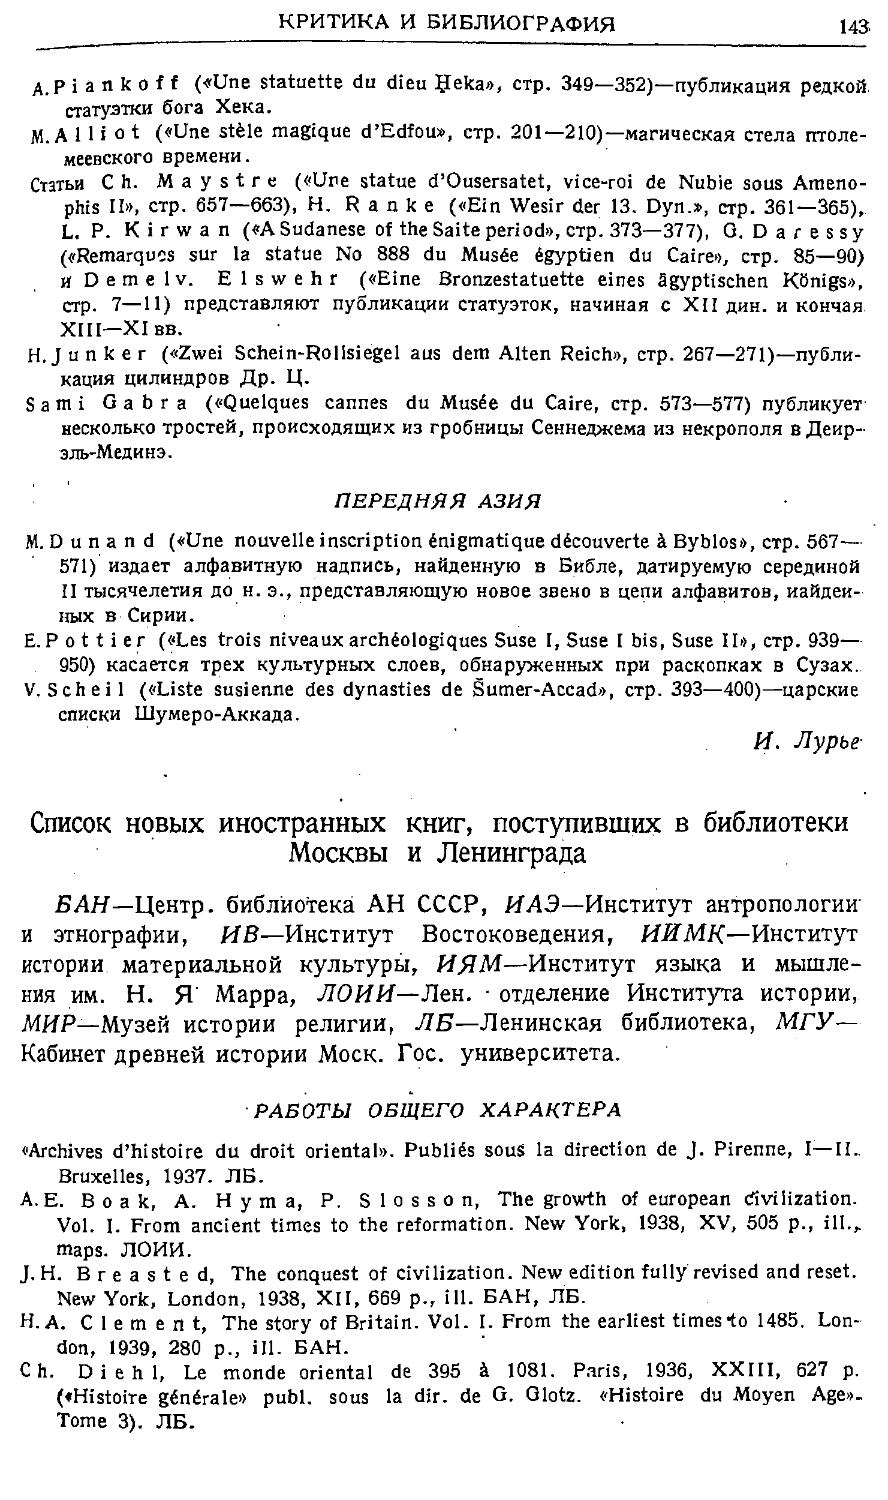 Список новых иностранных книг, поступивших в библиотеки Москвы и Ленинграда